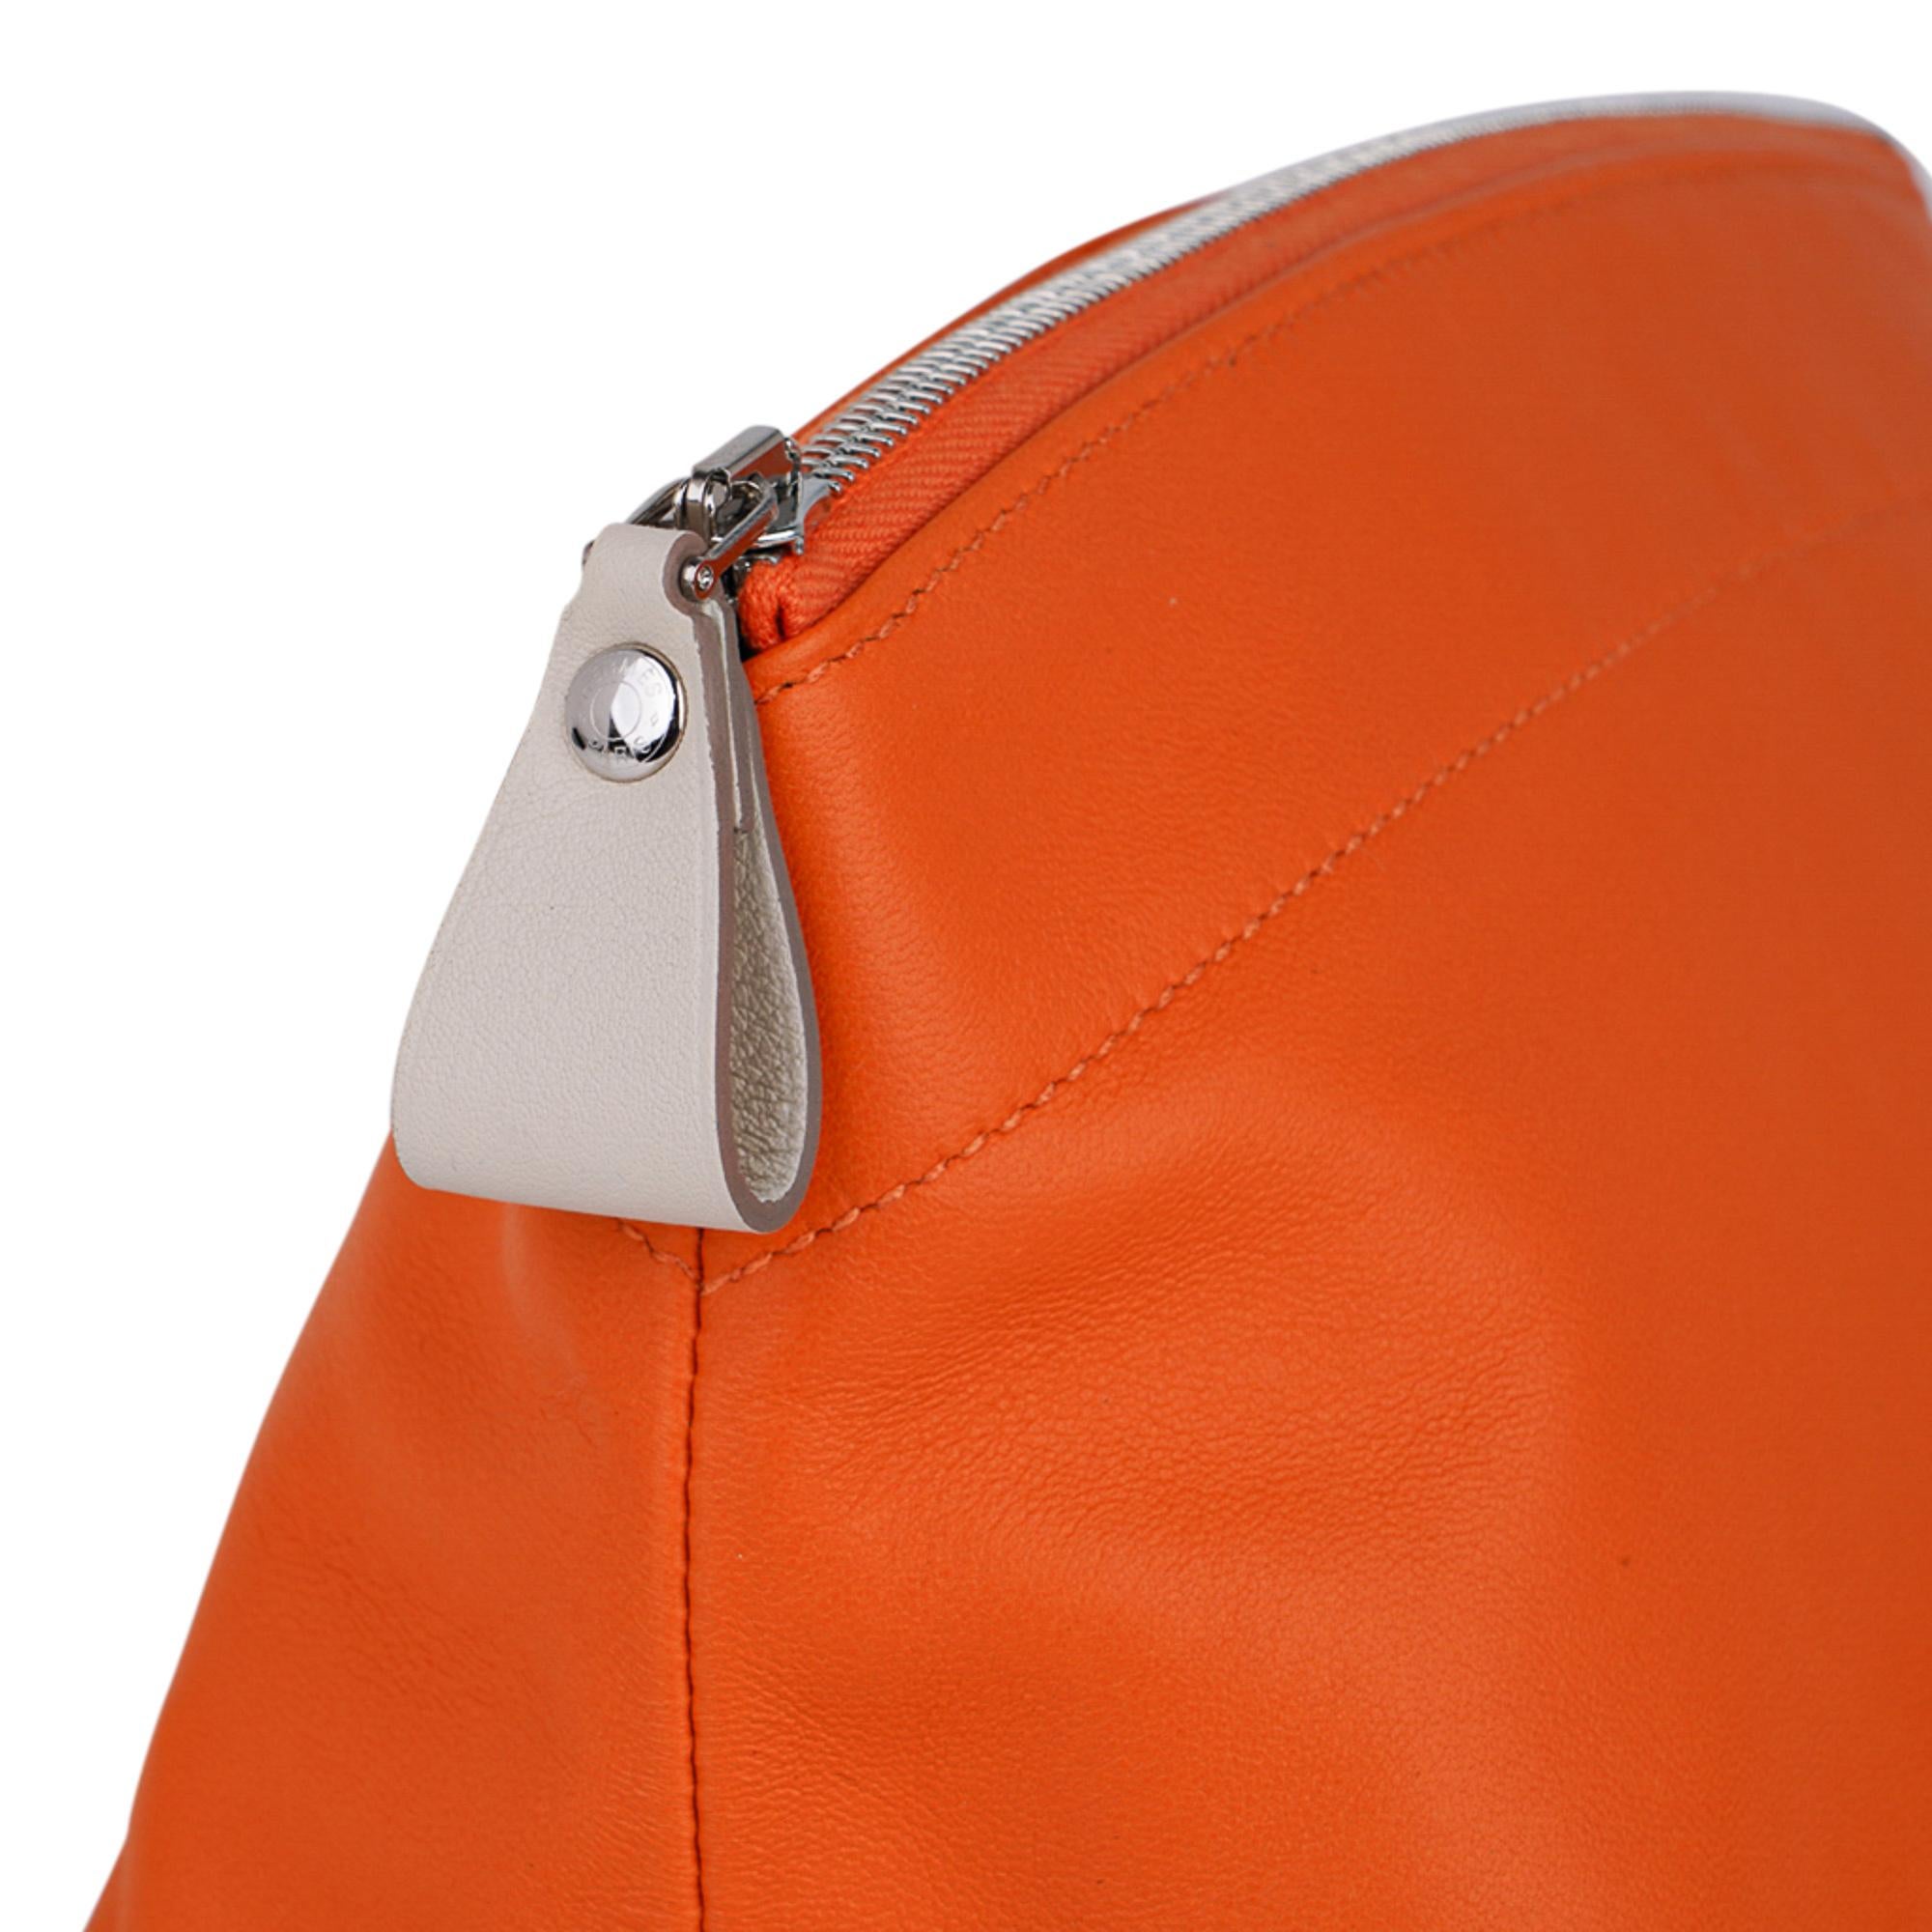 Mightychic bietet ein Hermes Tohubohu Pouch Medium Modell in den Farben Orange und Craie an.
Ein multifunktionales Stück aus butterweichem Milo-Lammfell.
Der obere Reißverschluss hat einen Craie-Seilzug aus Leder.
Ton-in-Ton-Stich.
Interieur ist